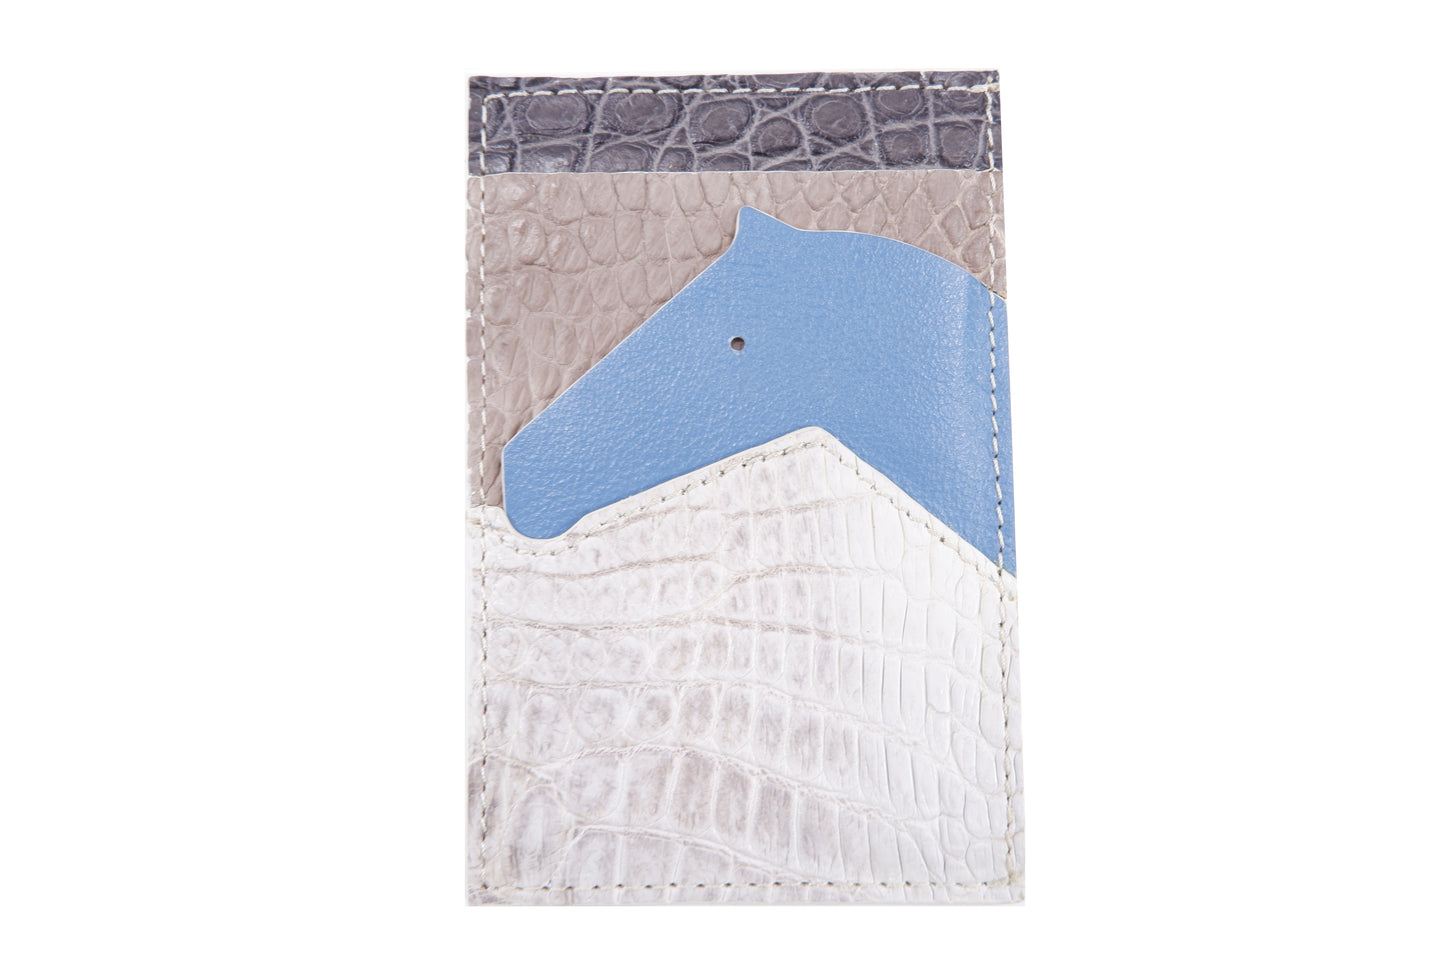 hermes card holder horse